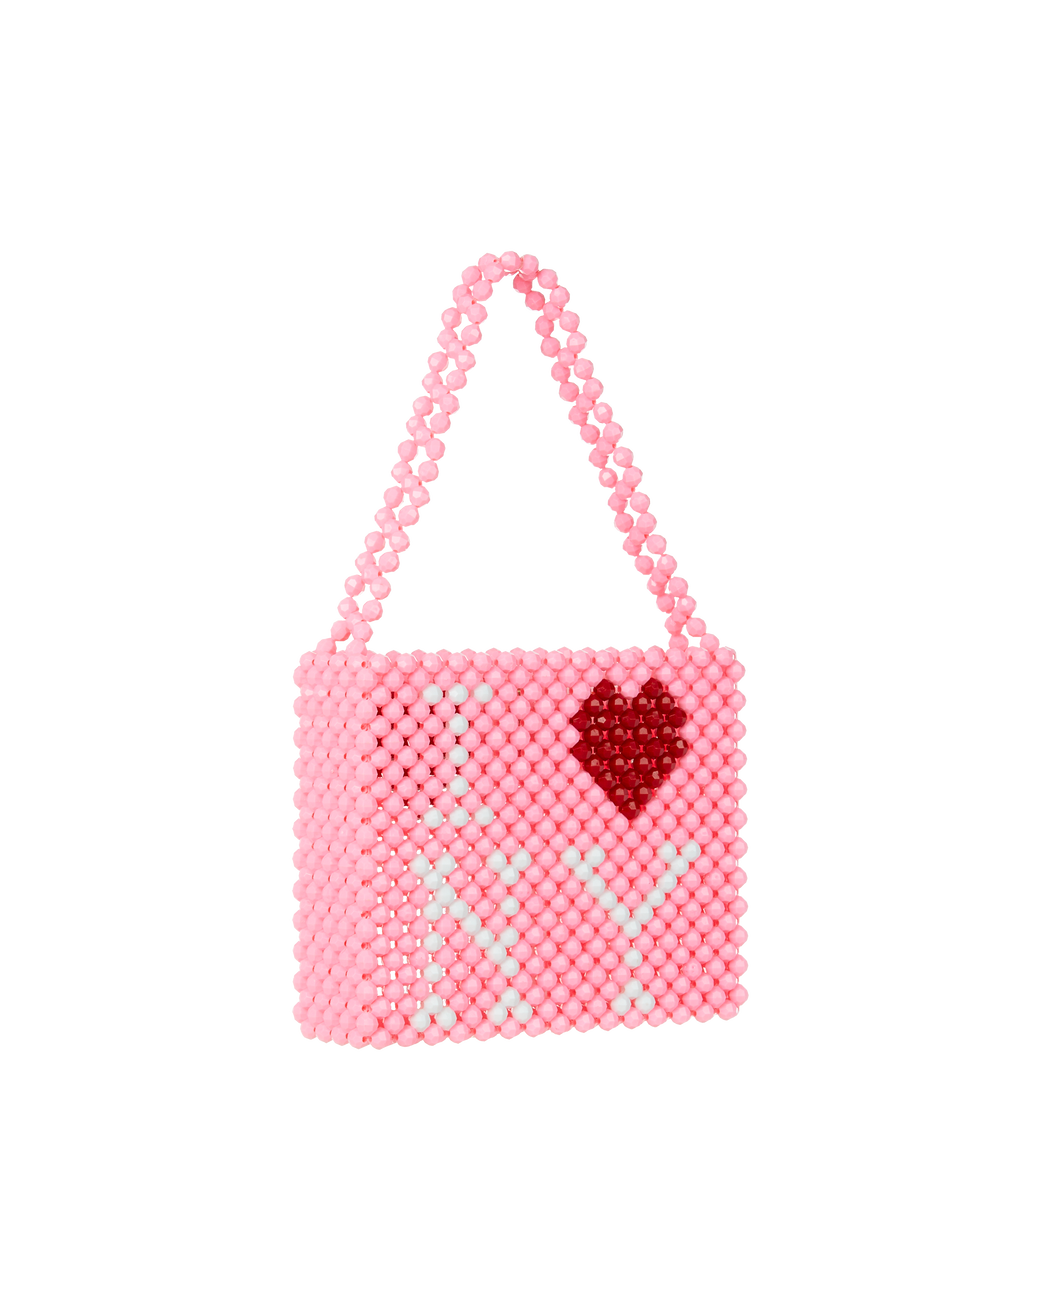 Mini I LOVE NY Bag